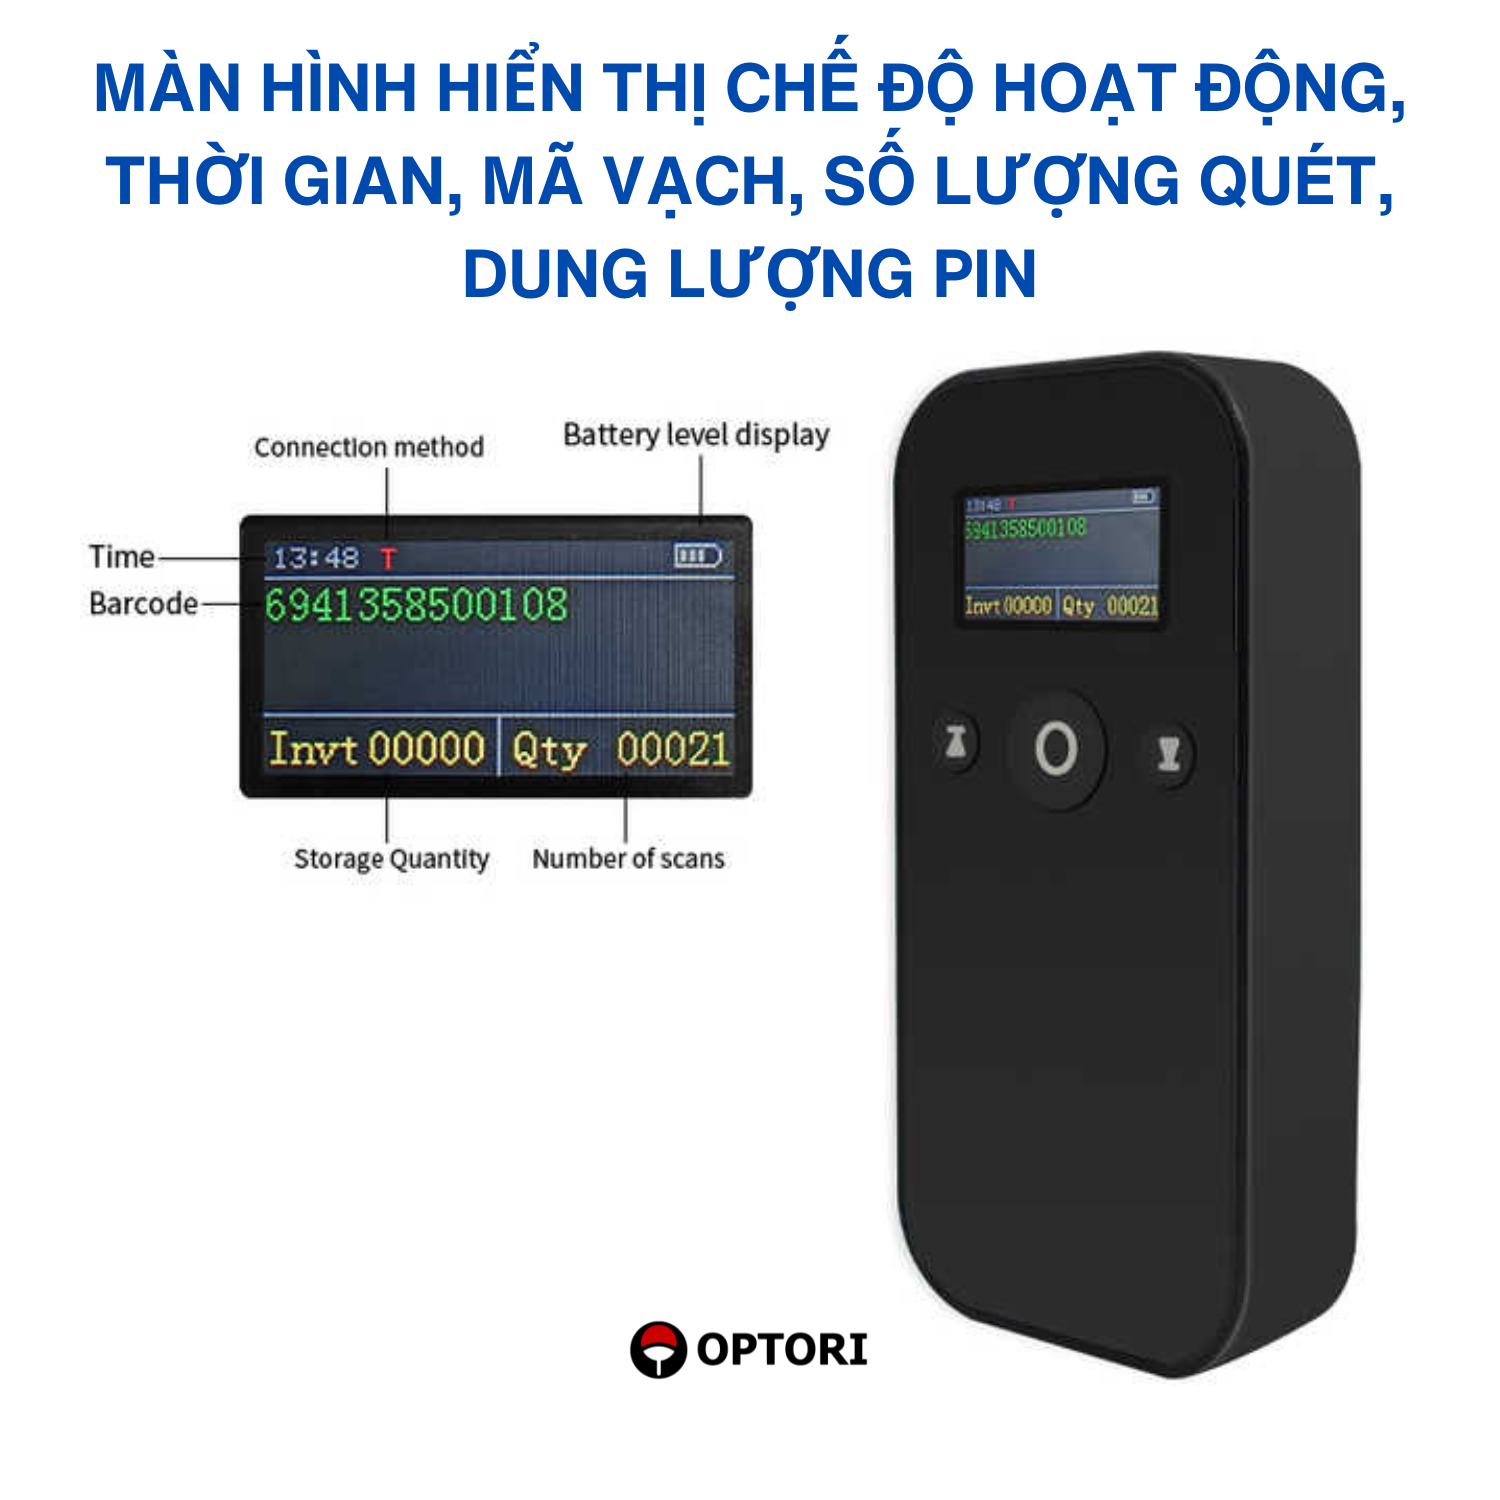 Máy quét mã vạch không dây – Máy đọc mã vạch bluetooth 2D – OPTORI H29 (Hàng chính hãng)